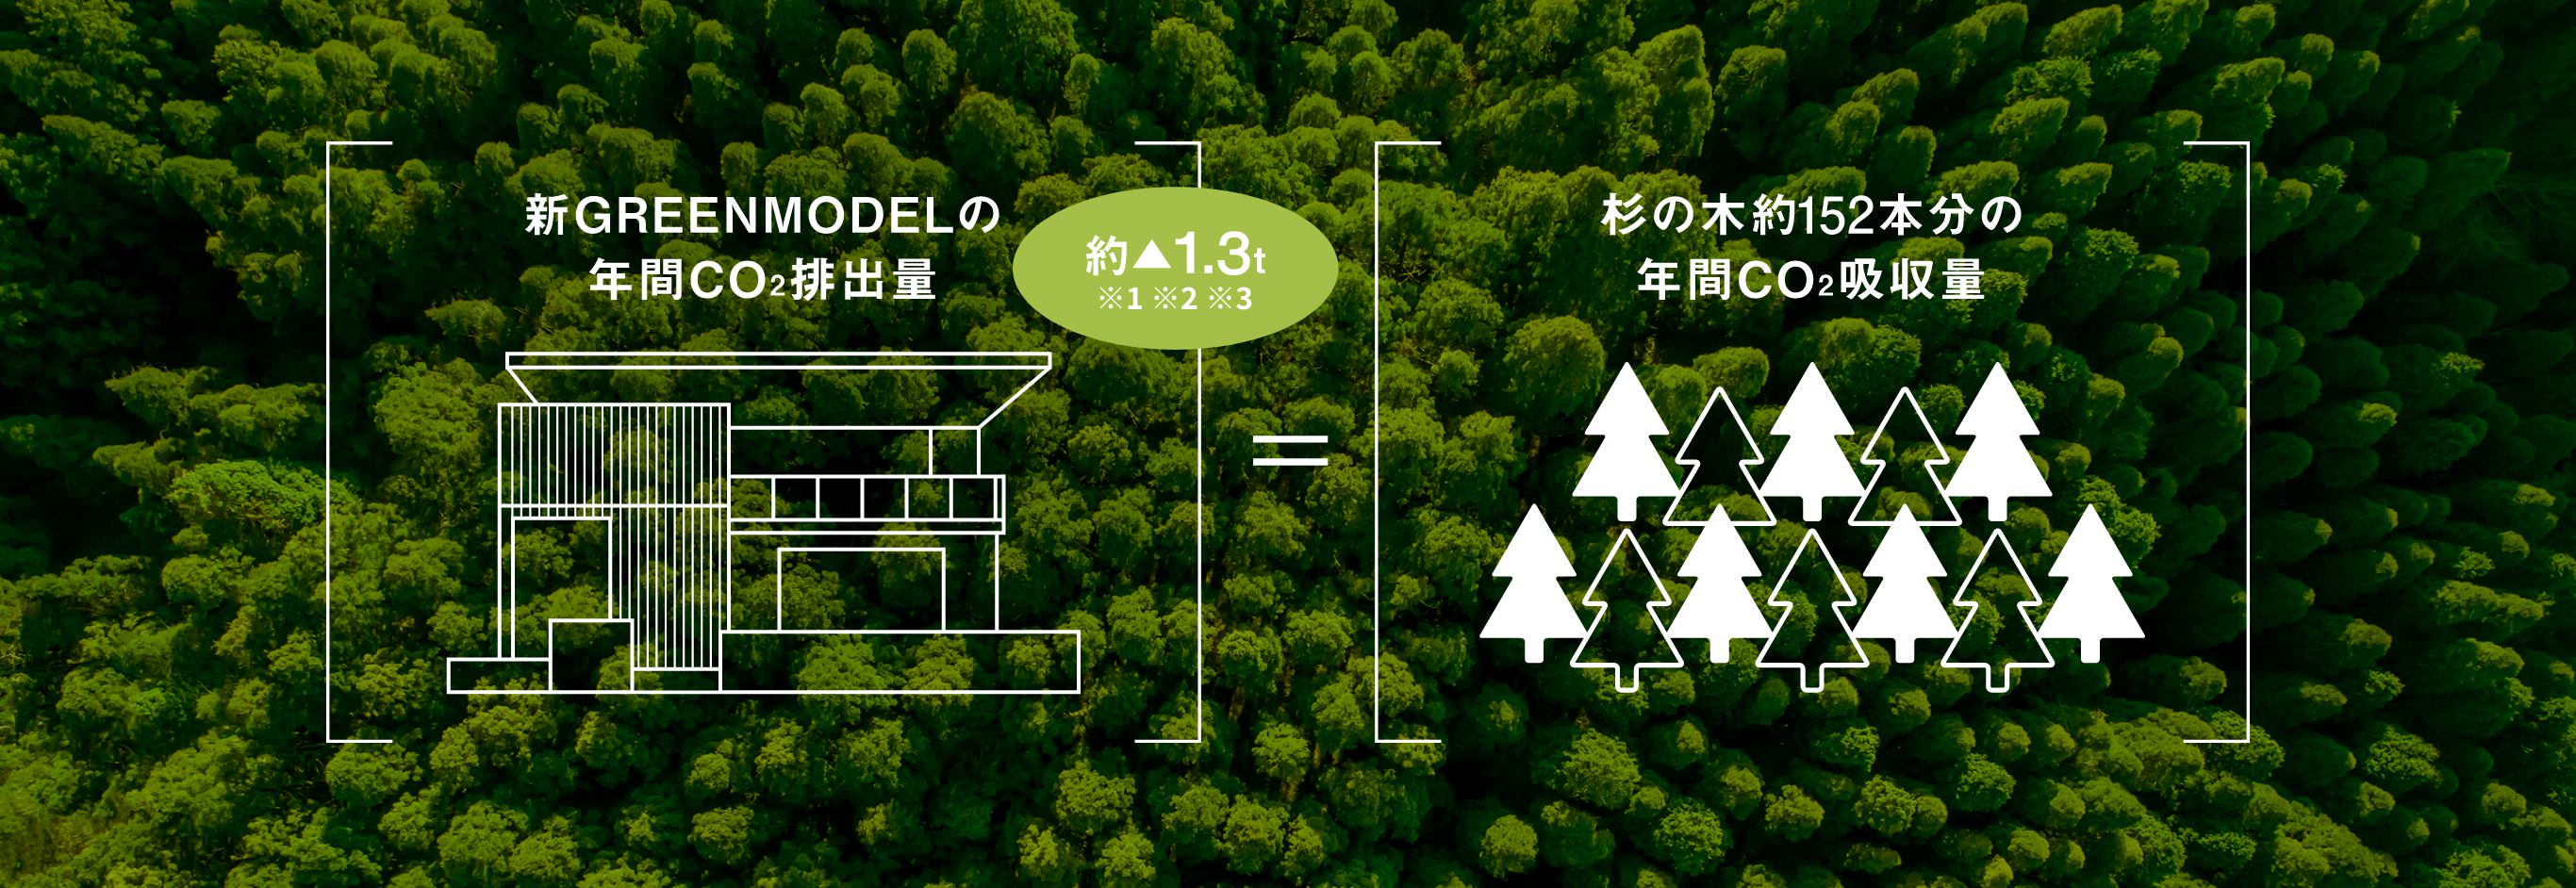 新グリーンモデルのシーオーツー年間排出量約マイナス1.3トン※123は、杉の木約152本分のシーオーツー吸収量に相当します